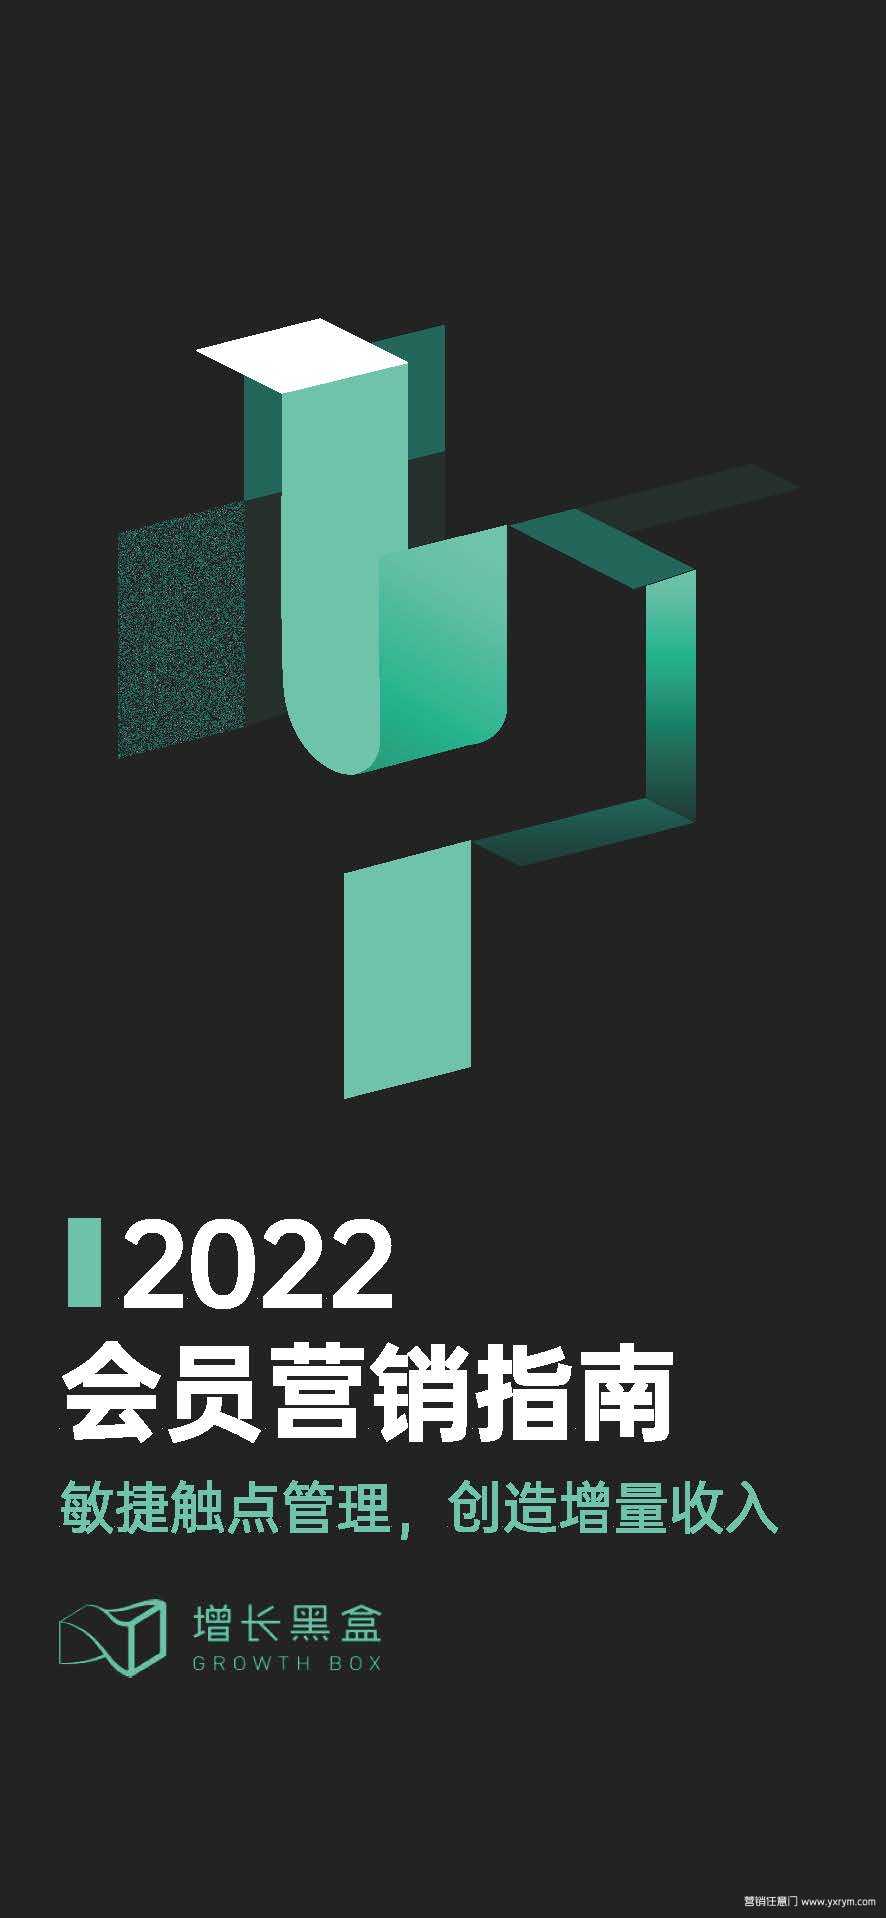 【营销任意门】2022会员营销指南-增长黑盒00